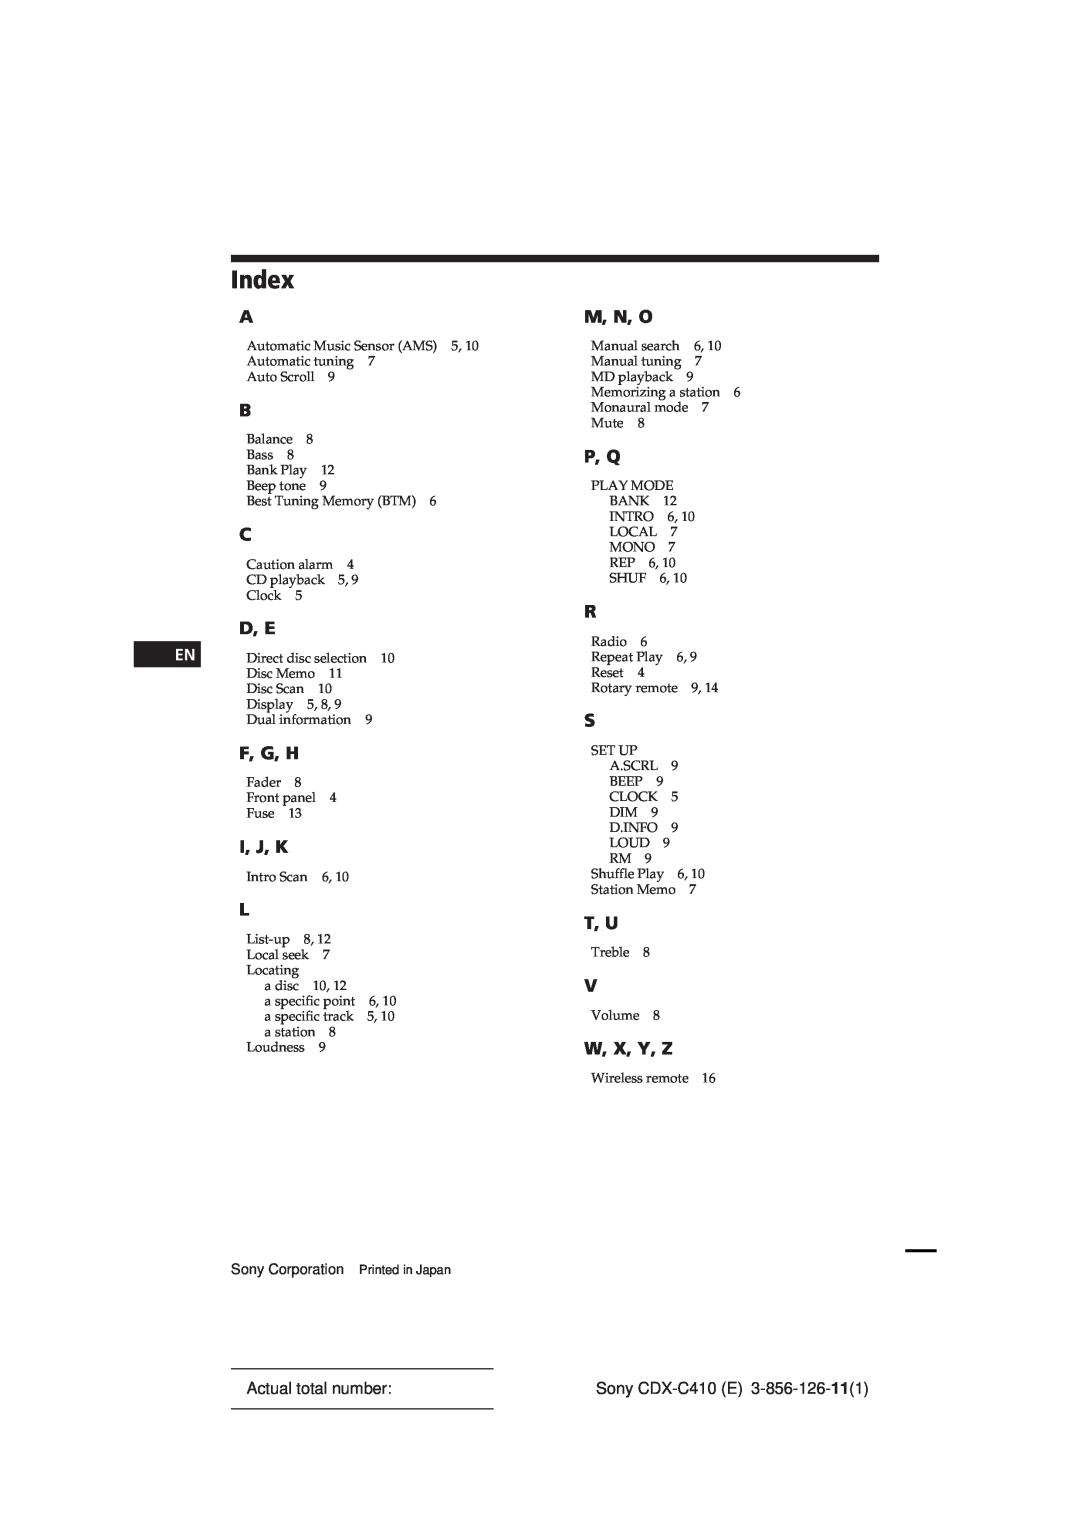 Sony CDX-C410 manual Index, D, E, F, G, H, I, J, K, M, N, O, P, Q, T, U, W, X, Y, Z 